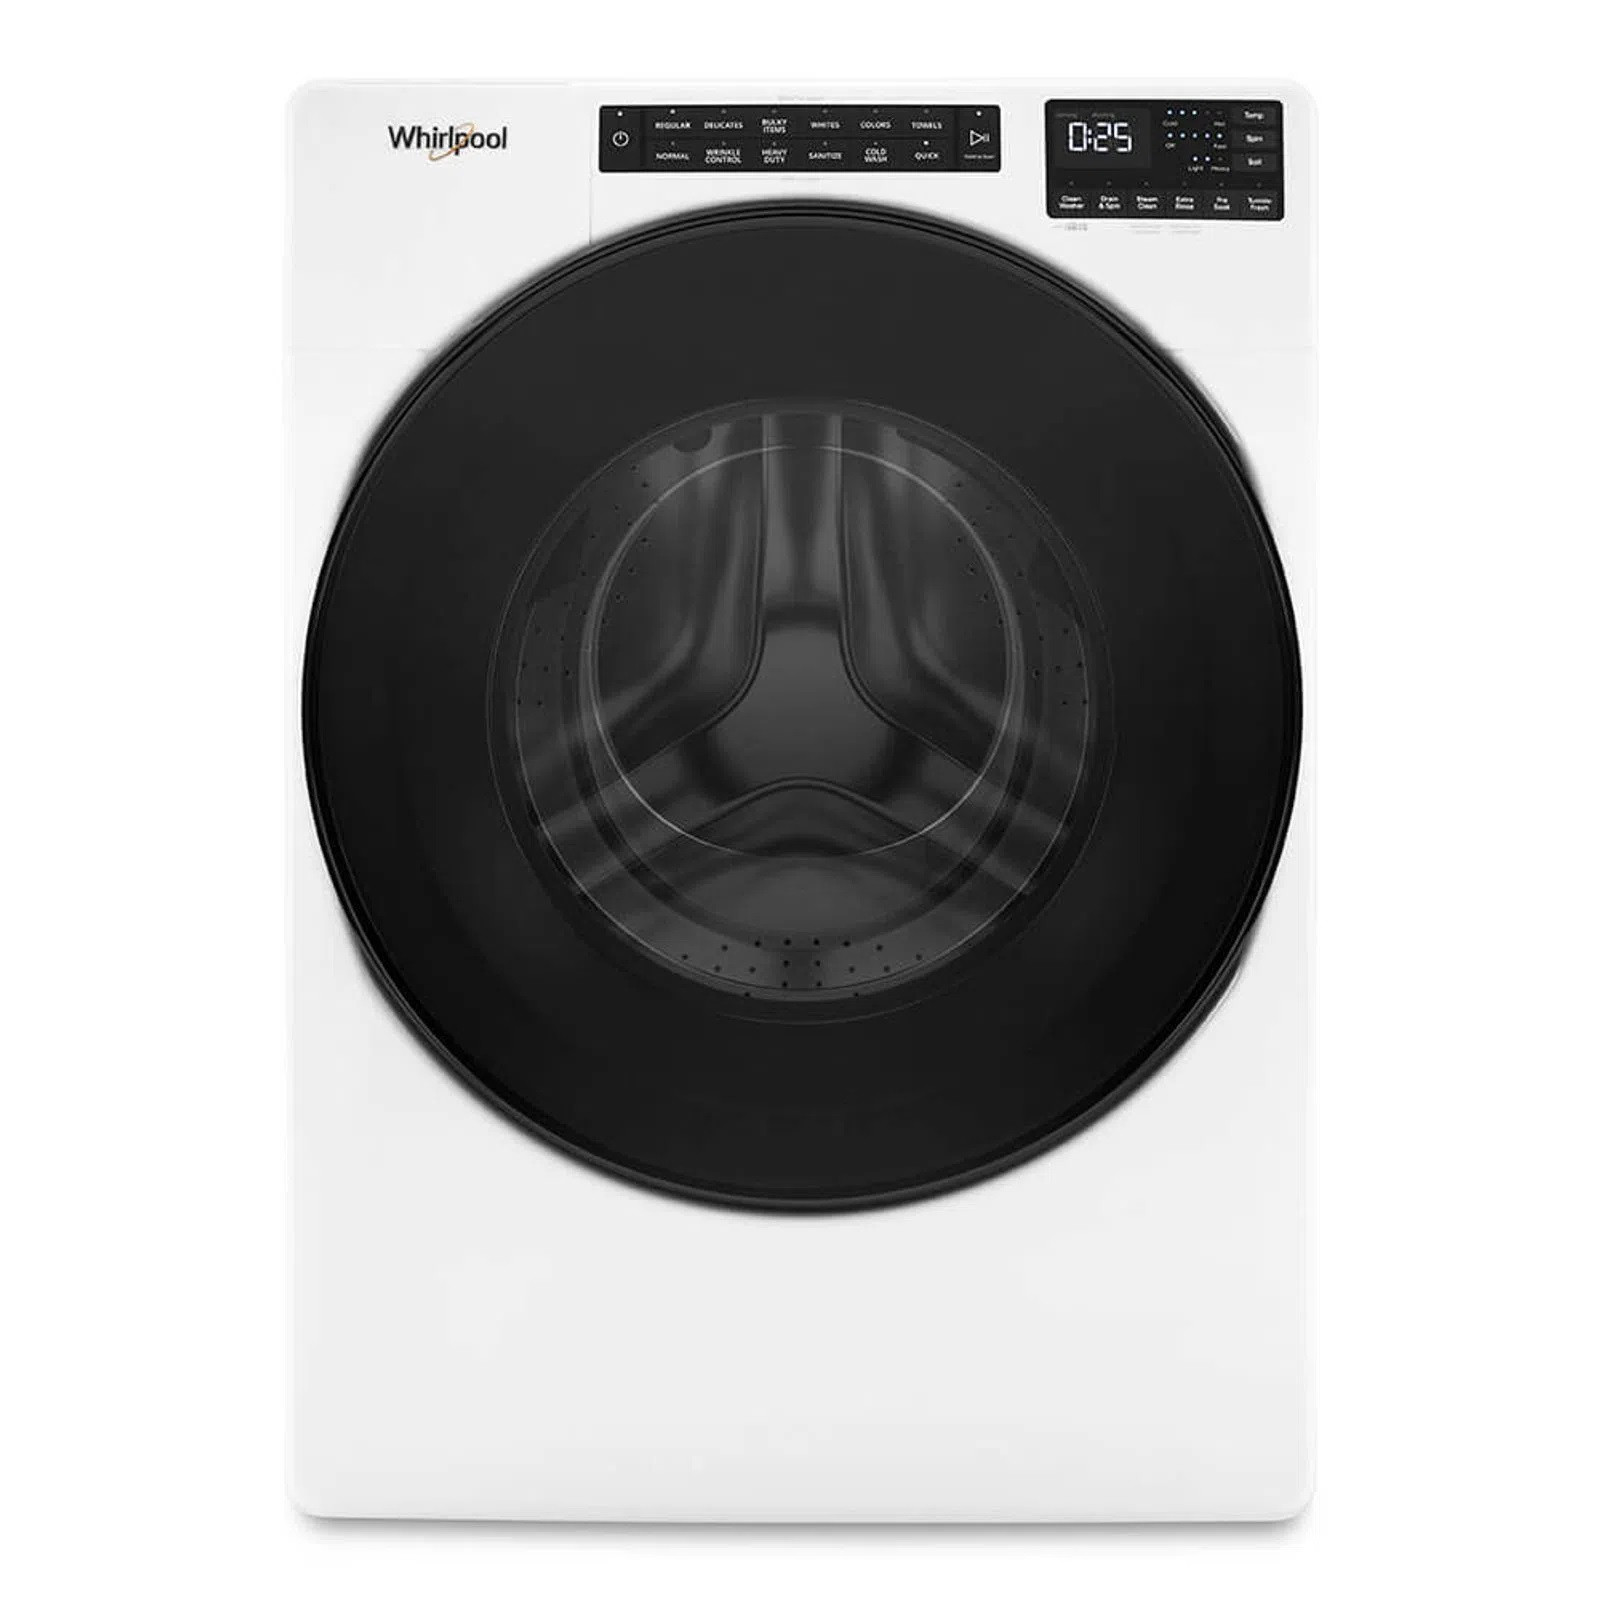 USA II - ¡La lavadora portátil ideal para un espacio